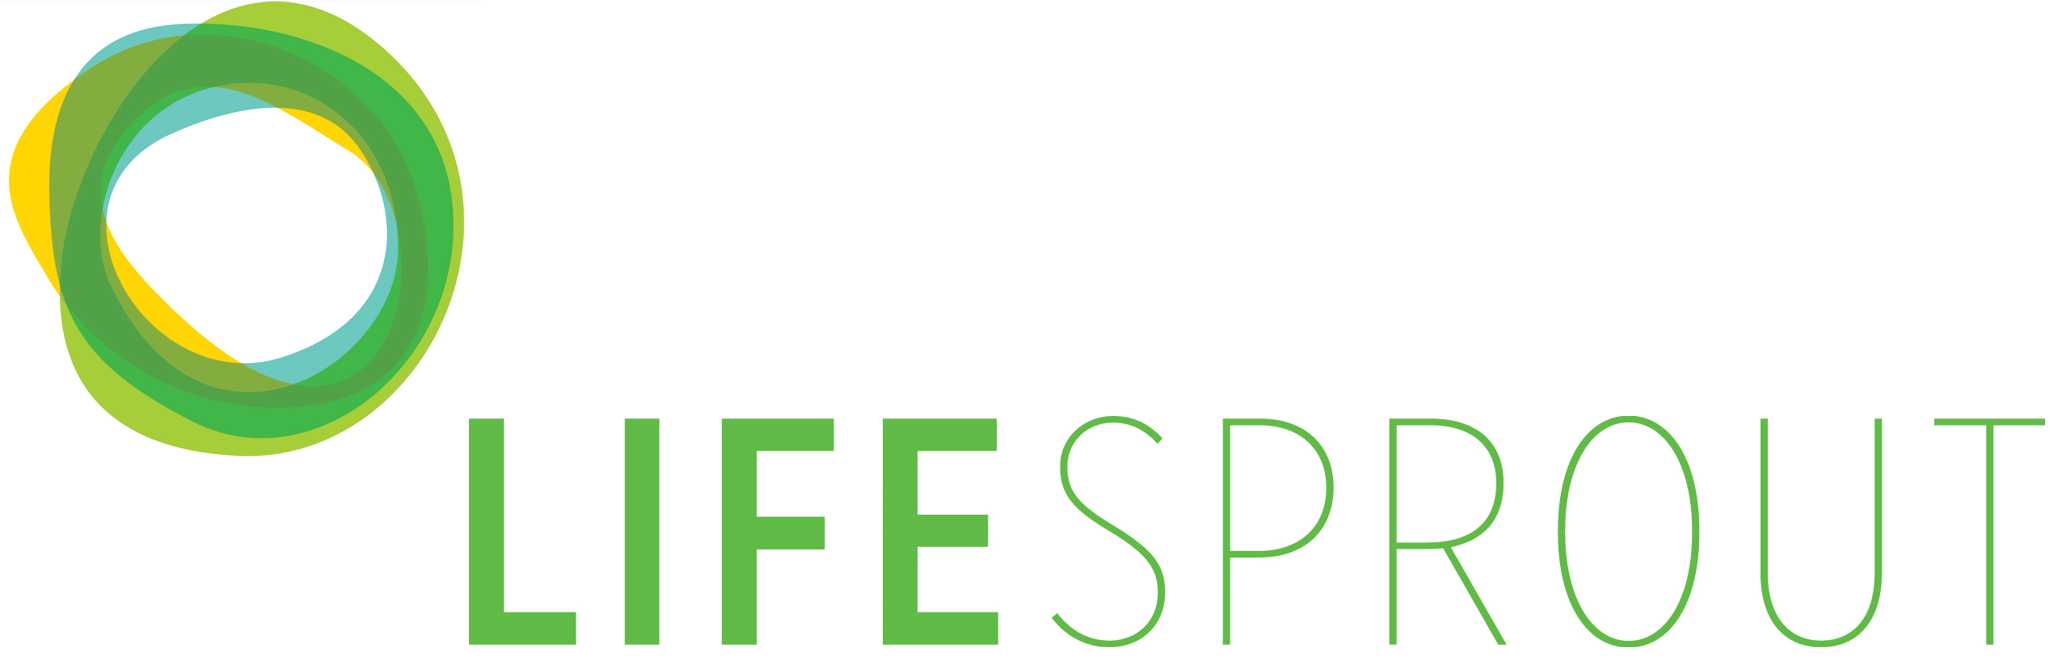 LifeSprout logo